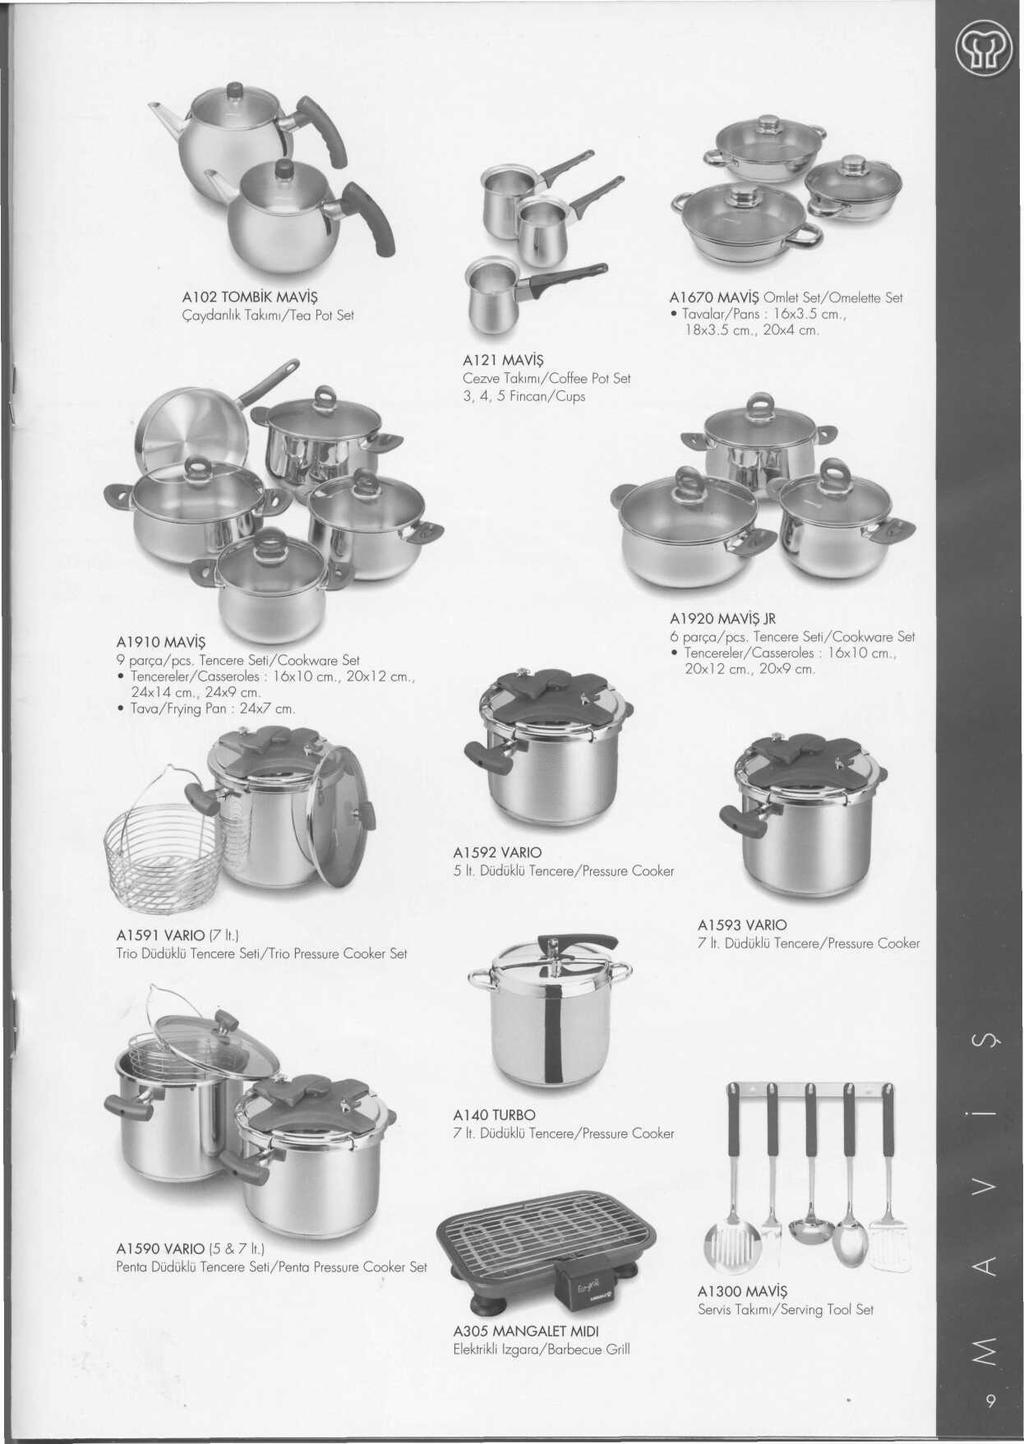 A102TOMBiKMAViS Gaydanlik Takimi/Tea Pot Set A1670 MAViS Omlet Set/Omelette Set Tavalar/Pans : 16x3.5 cm., 18x3.5 cm., 20x4 cm.